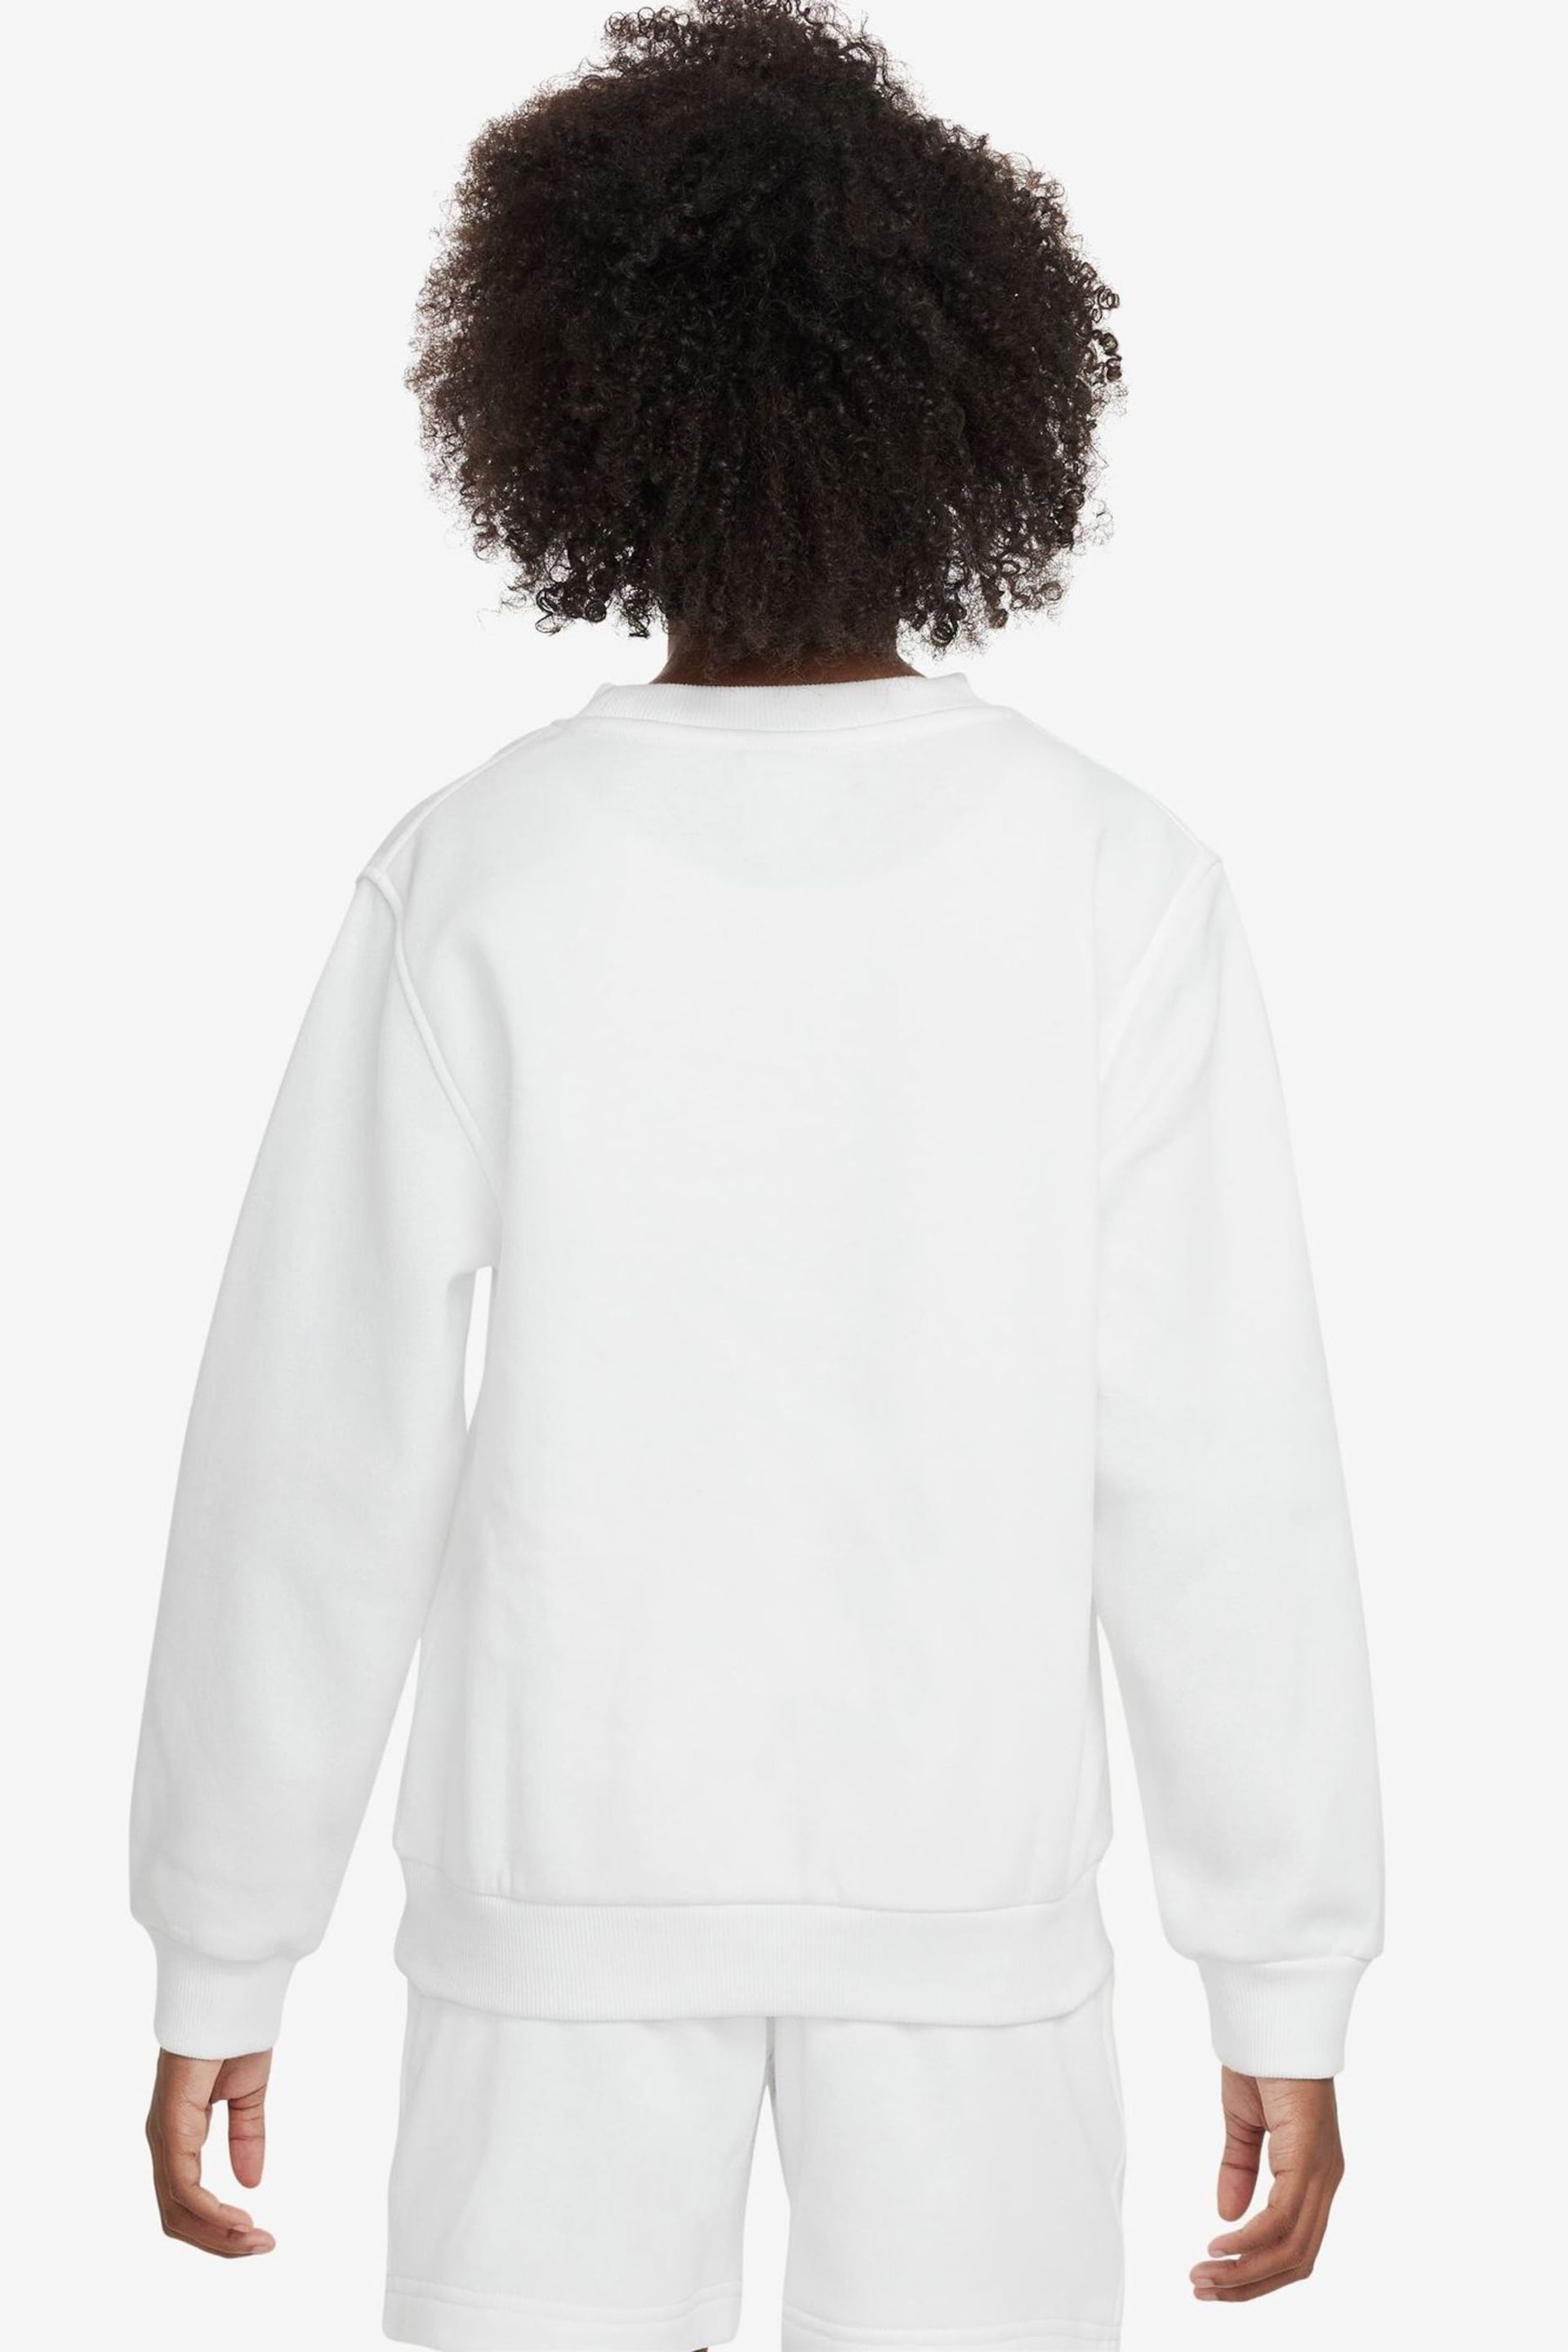 Nike White Club Fleece Sweatshirt - Image 2 of 7